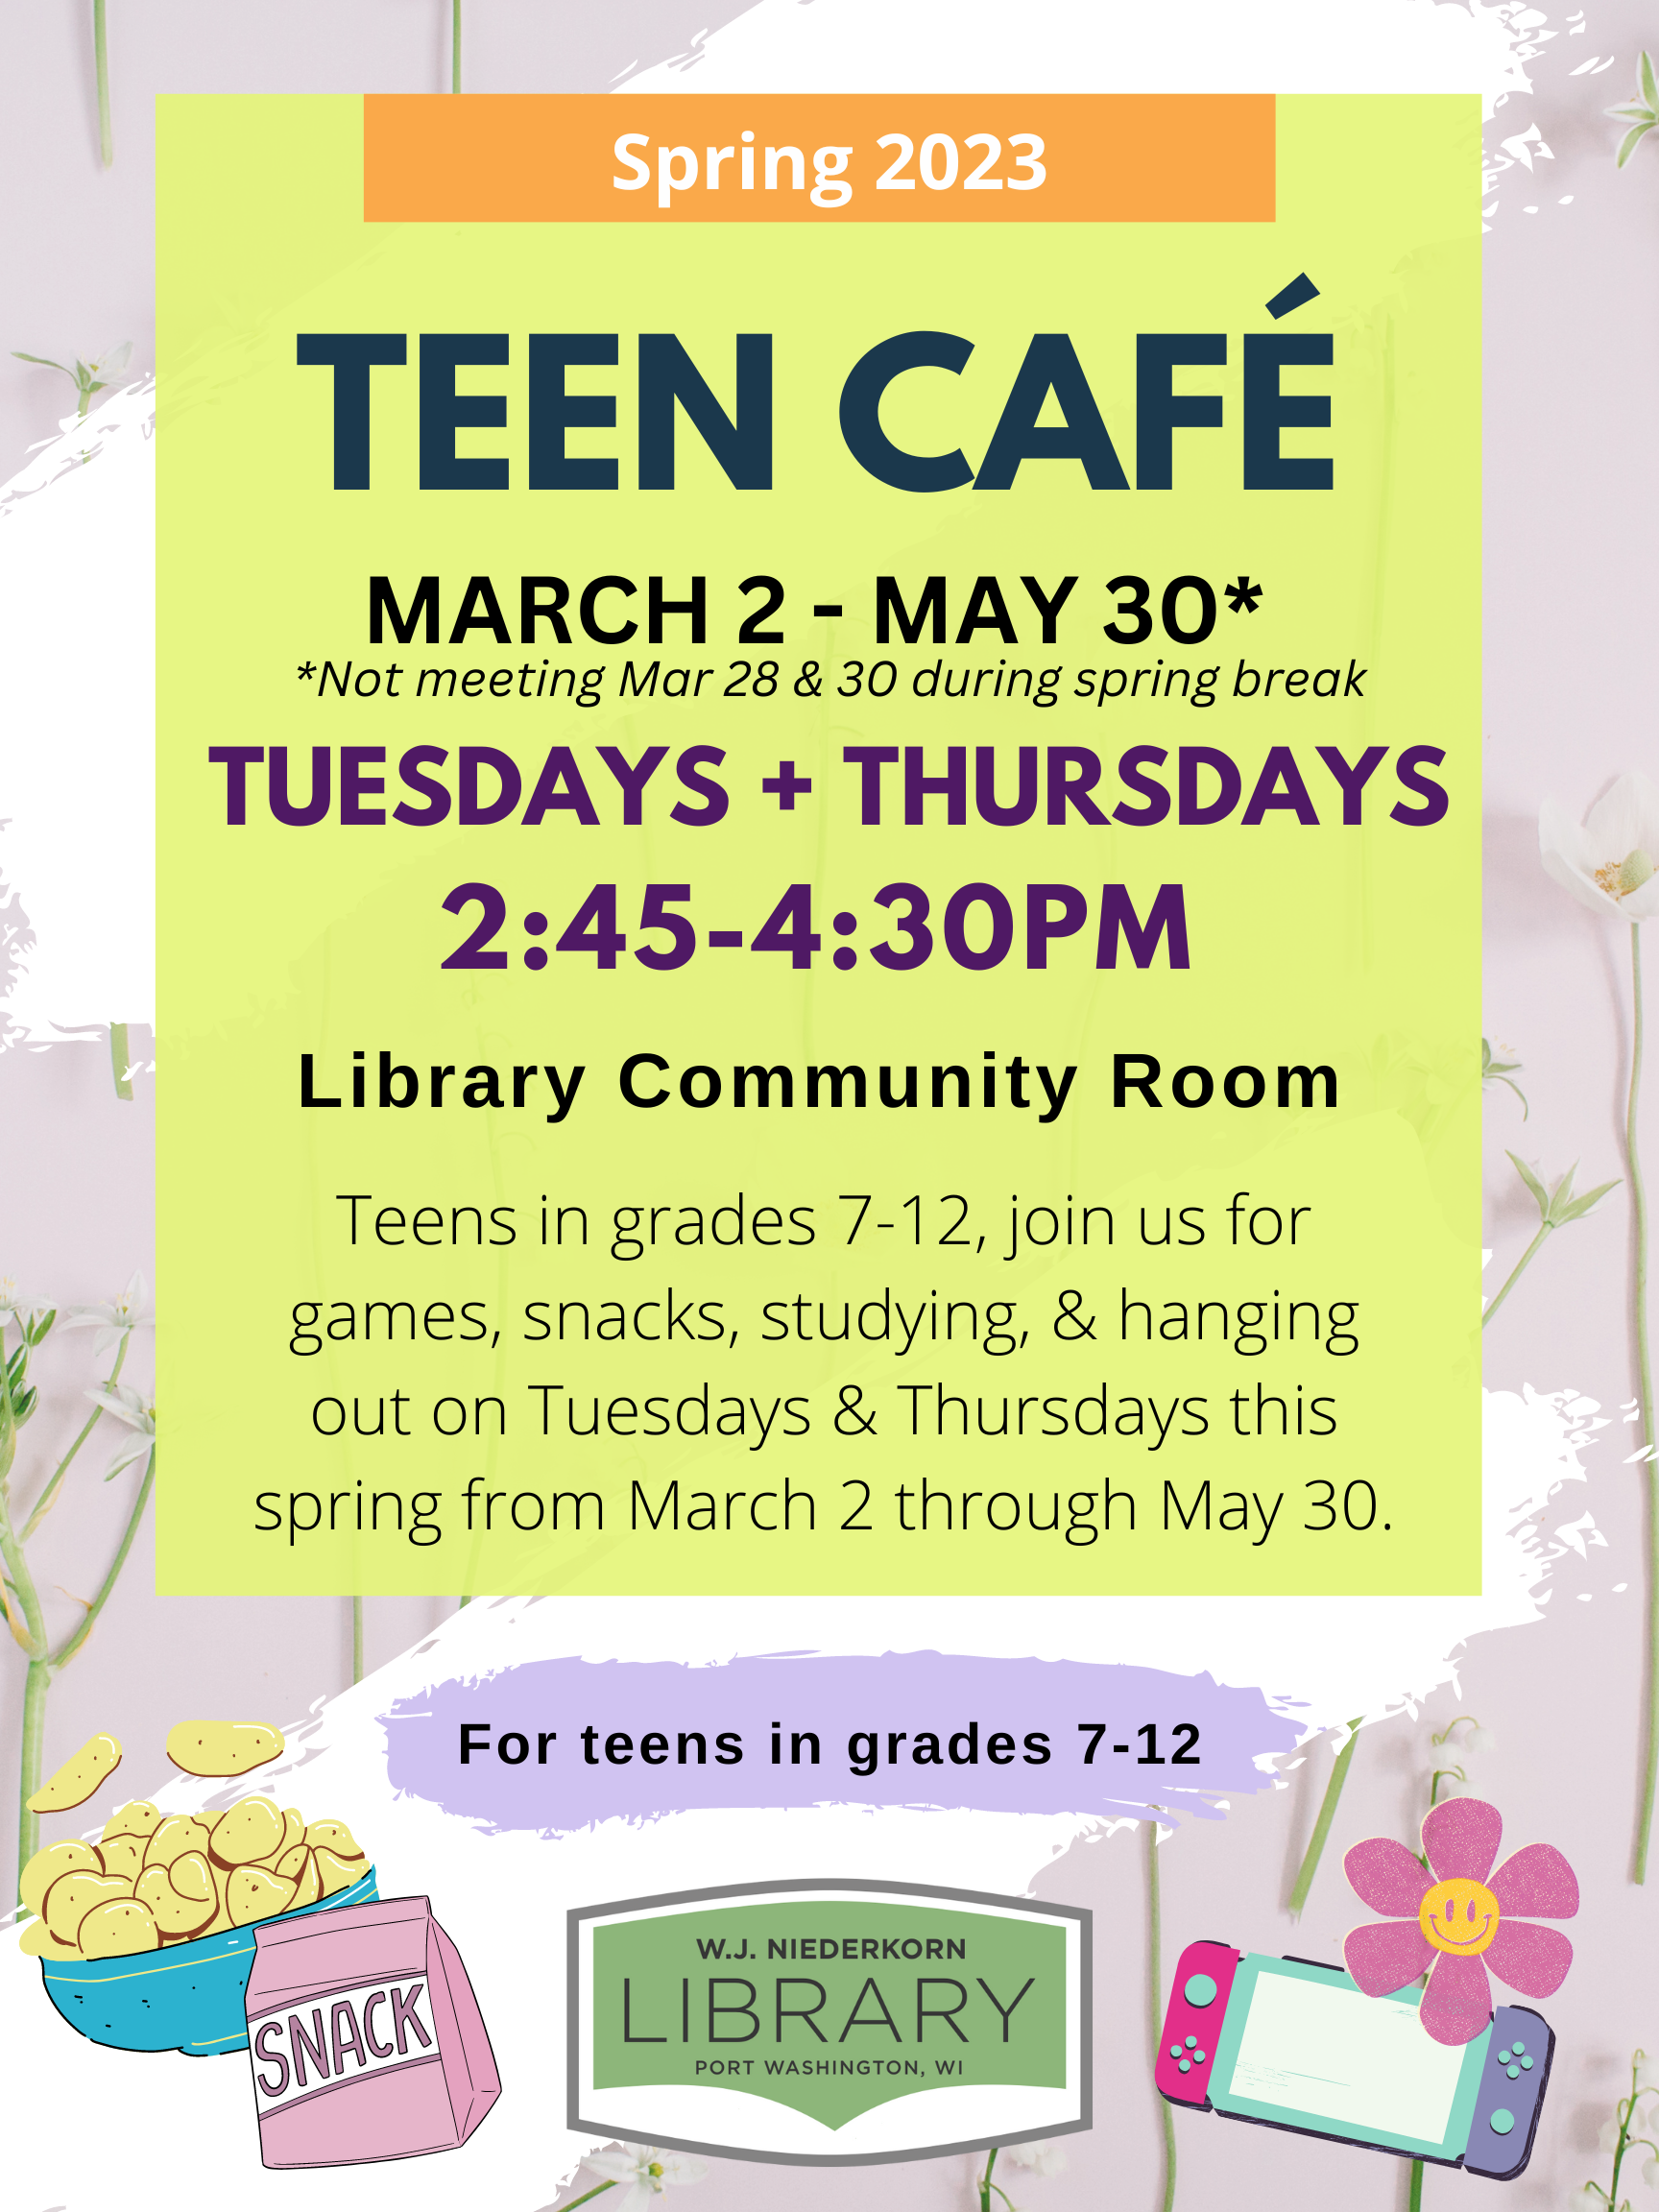 Teen Cafe spring 2023 flyer